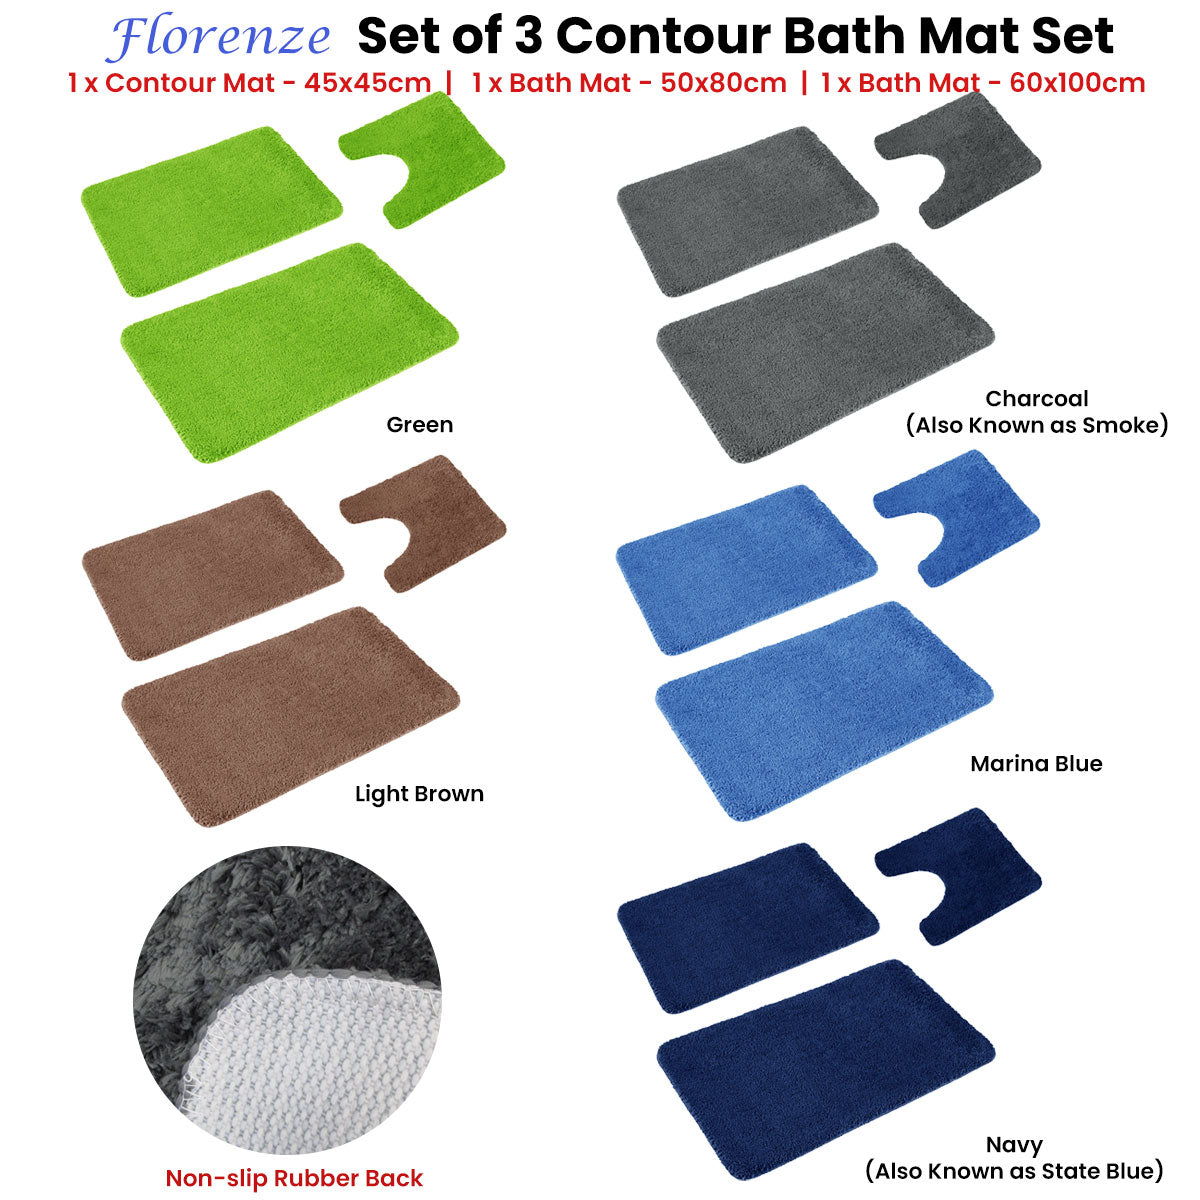 Florenz Set of 3 Contour Bath Mat Set Charcoal (Also Known as Smoke)